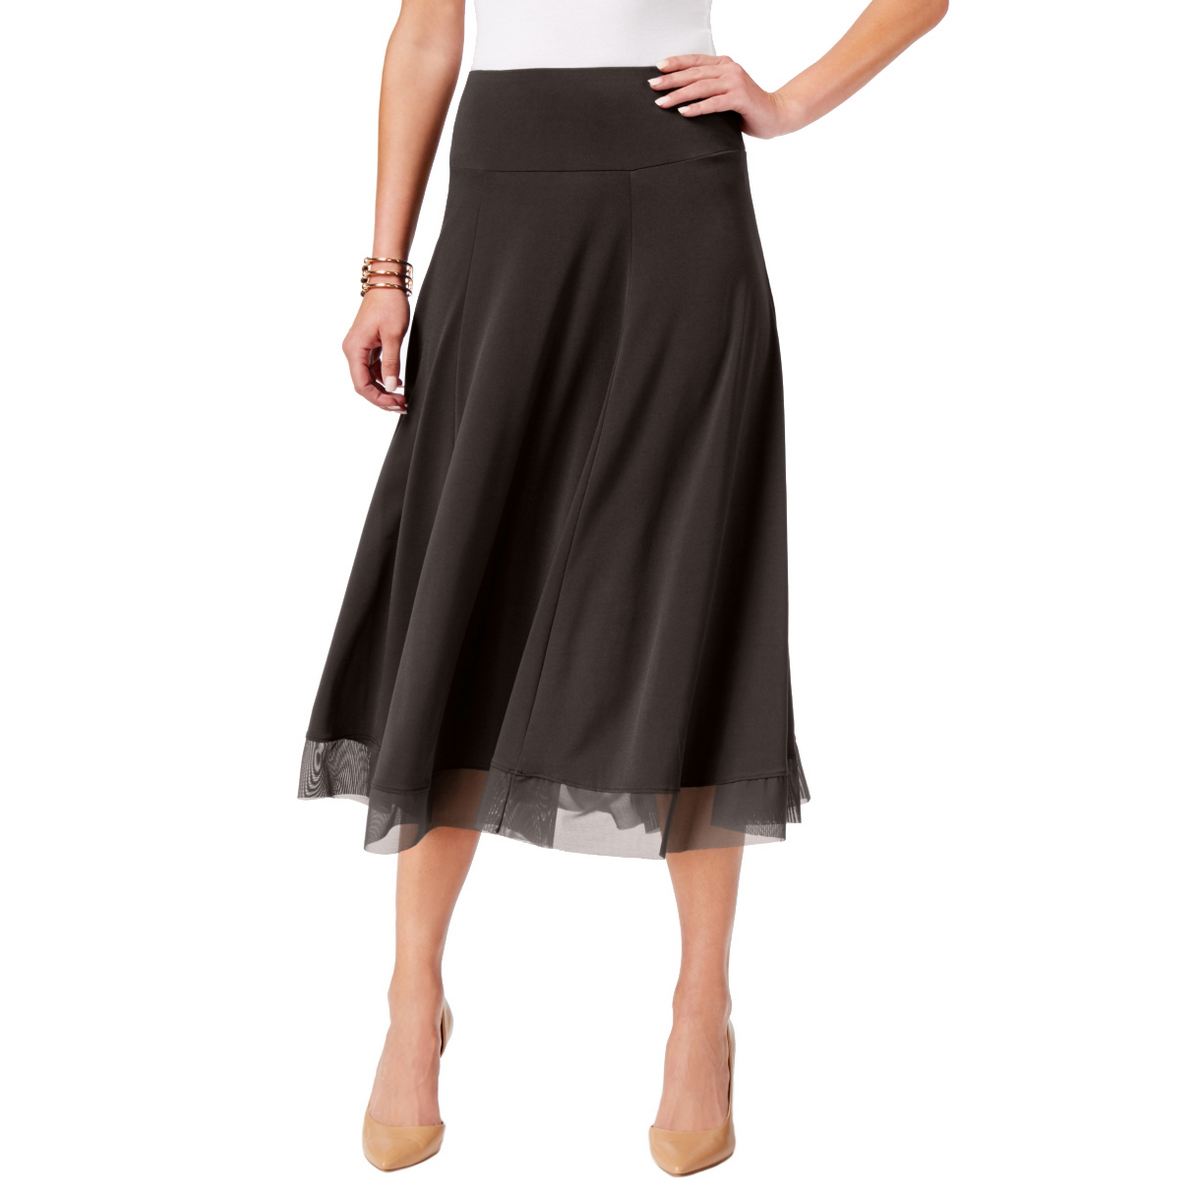 mesh skirt ebay